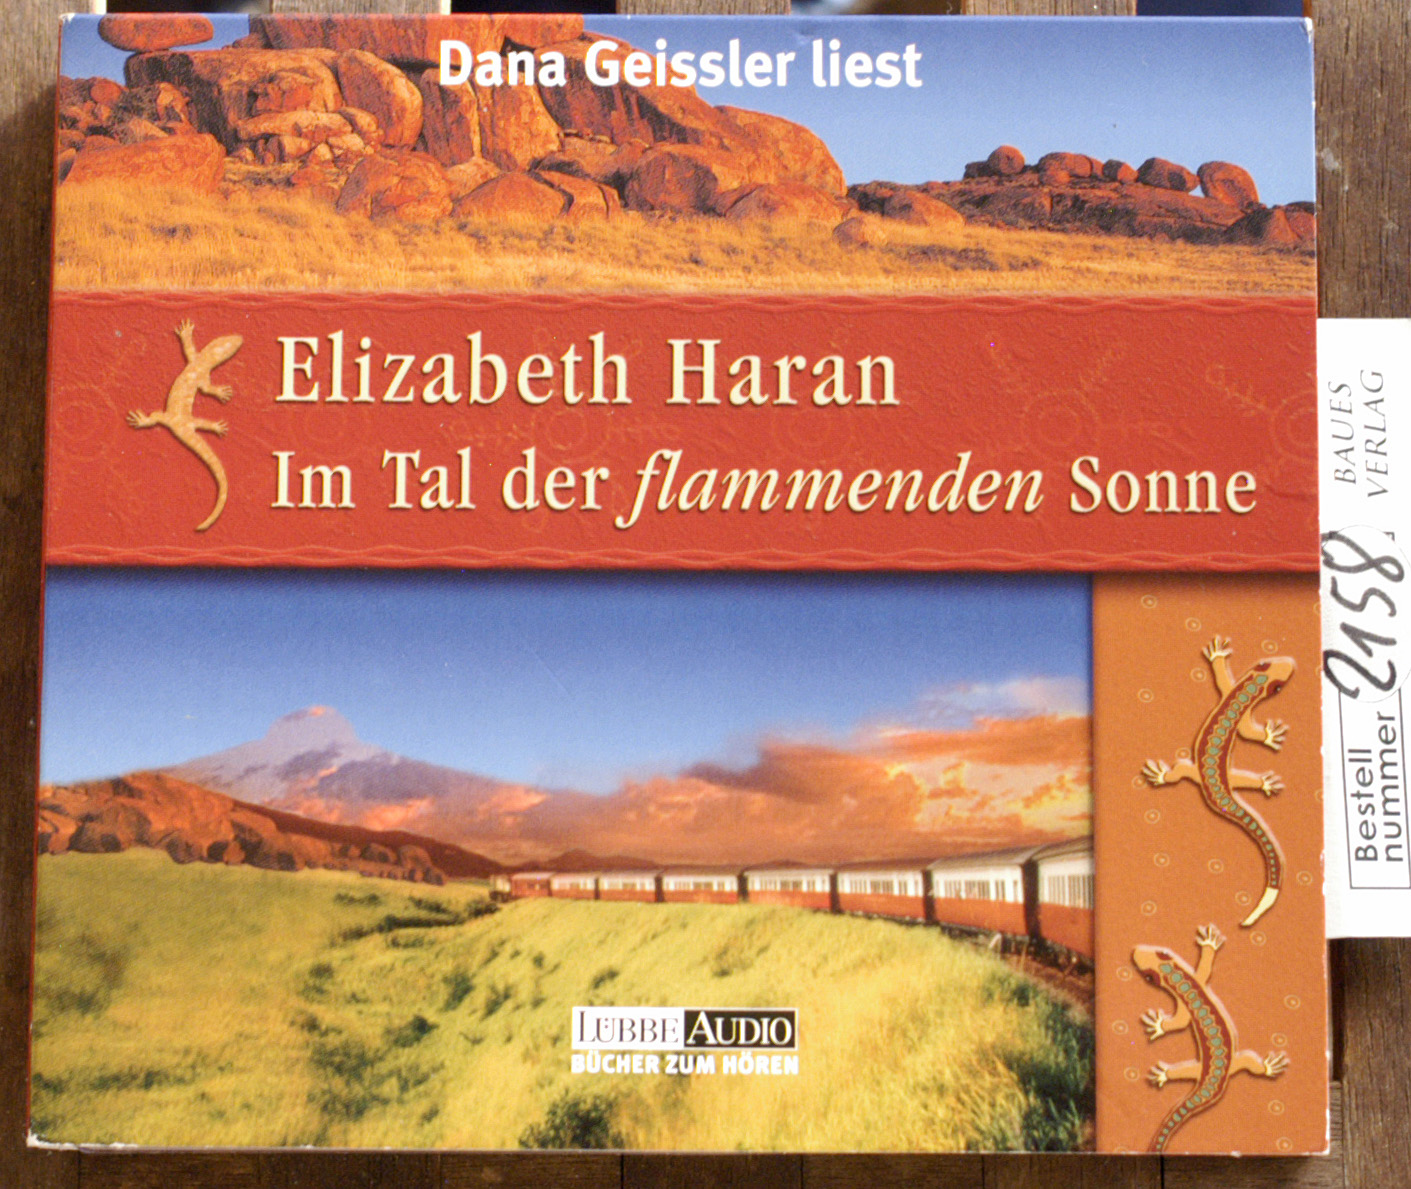 Haran, Elisabeth und Dana [Les.] Geissler.  Im Tal der flammenden Sonne : Hörbuch ; [CD] Vorgelesen von Dana Geissler, Lübbe Audio Bücher zum Hören 